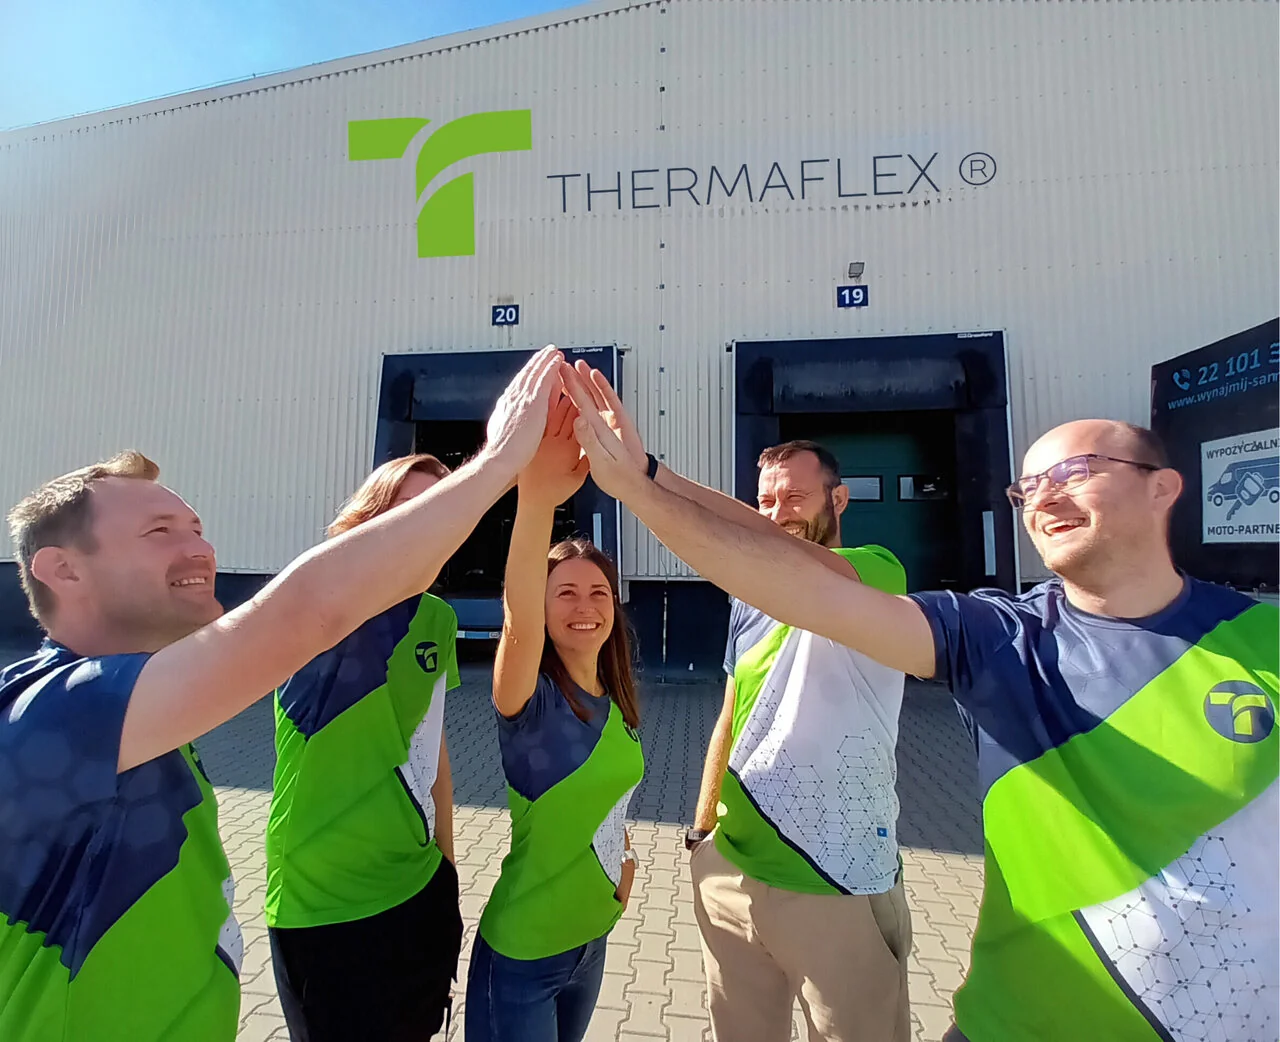 W Thermaflex pracownicy stanowią zgrany zespół fot. Thermaflex